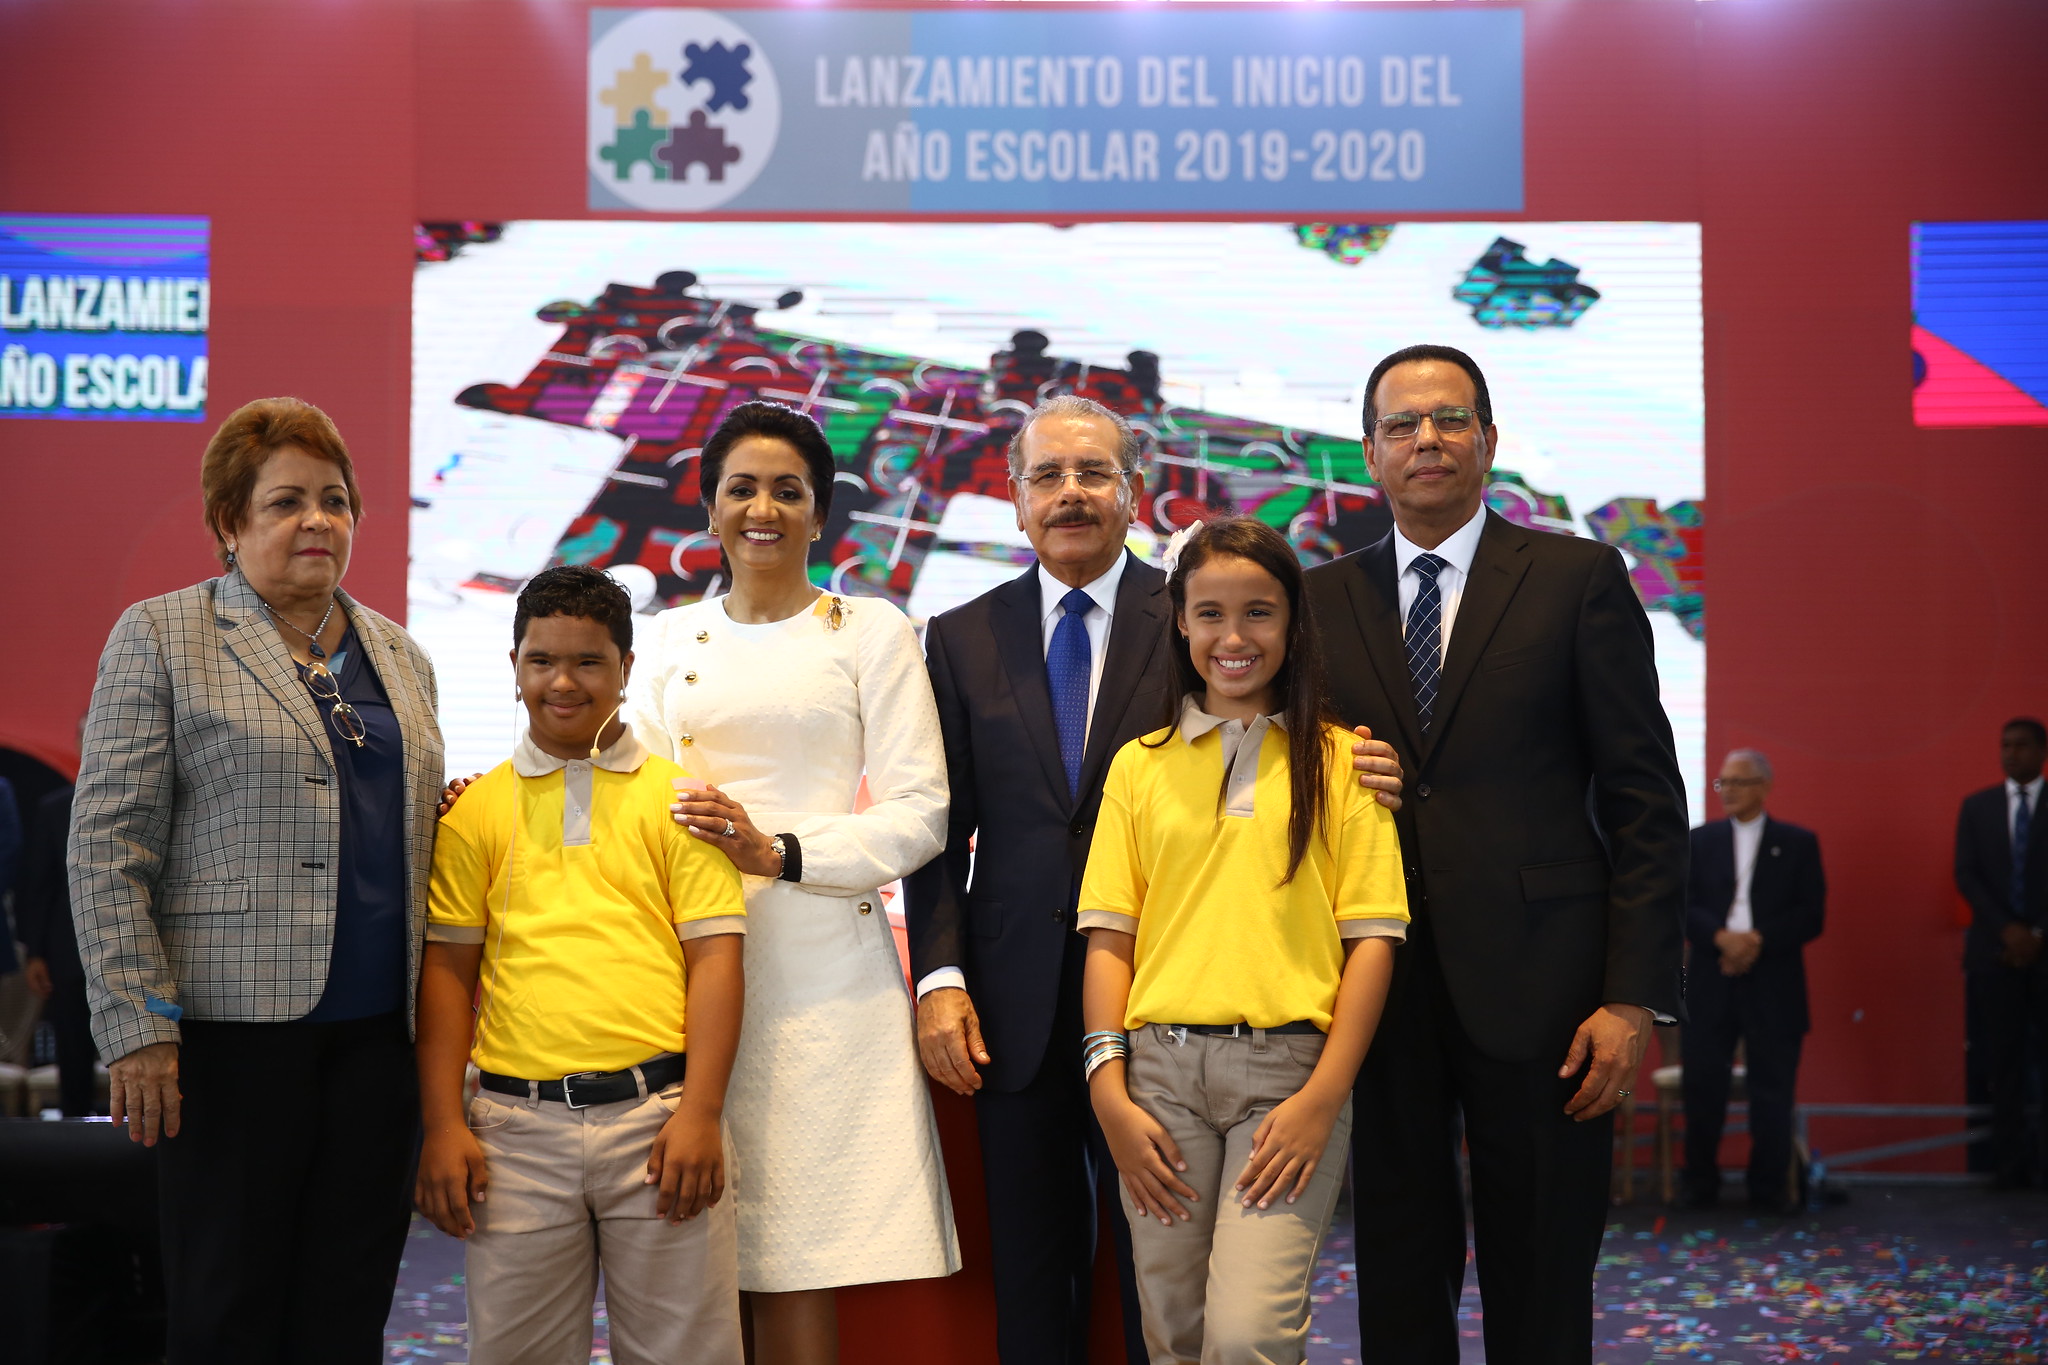 REPÚBLICA DOMINICANA: Inicia año escolar 2019-2020 con casi tres millones de estudiantes; presidente Danilo Medina encabeza emotivo acto en Santiago